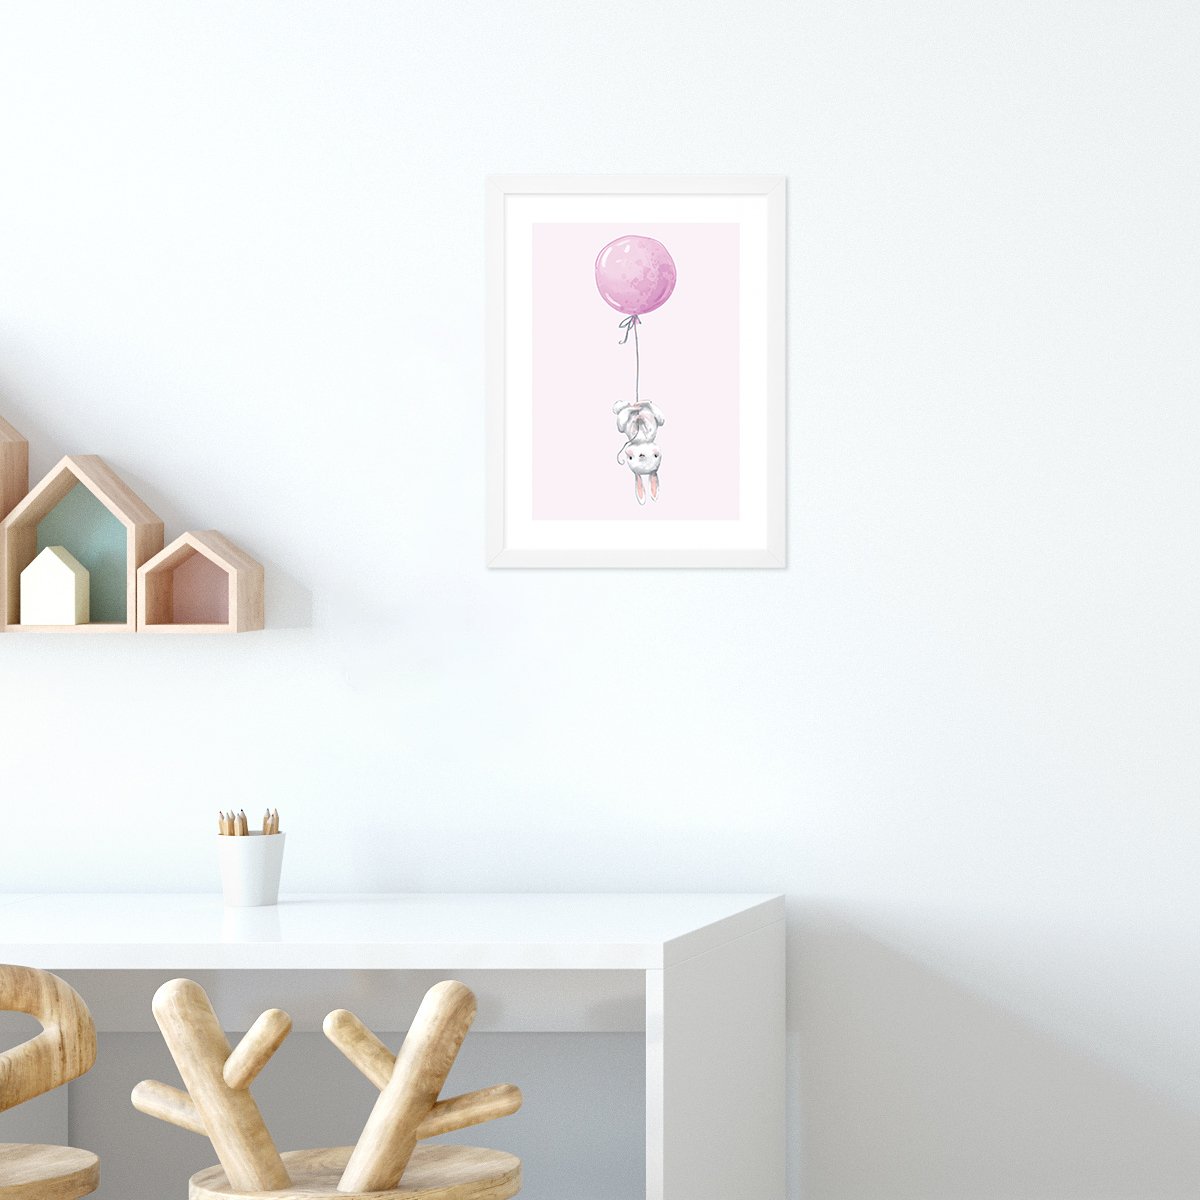 plakaty do pokoju dziewczynki z króliczkiem i różowym balonikiem#kolor_rozowy